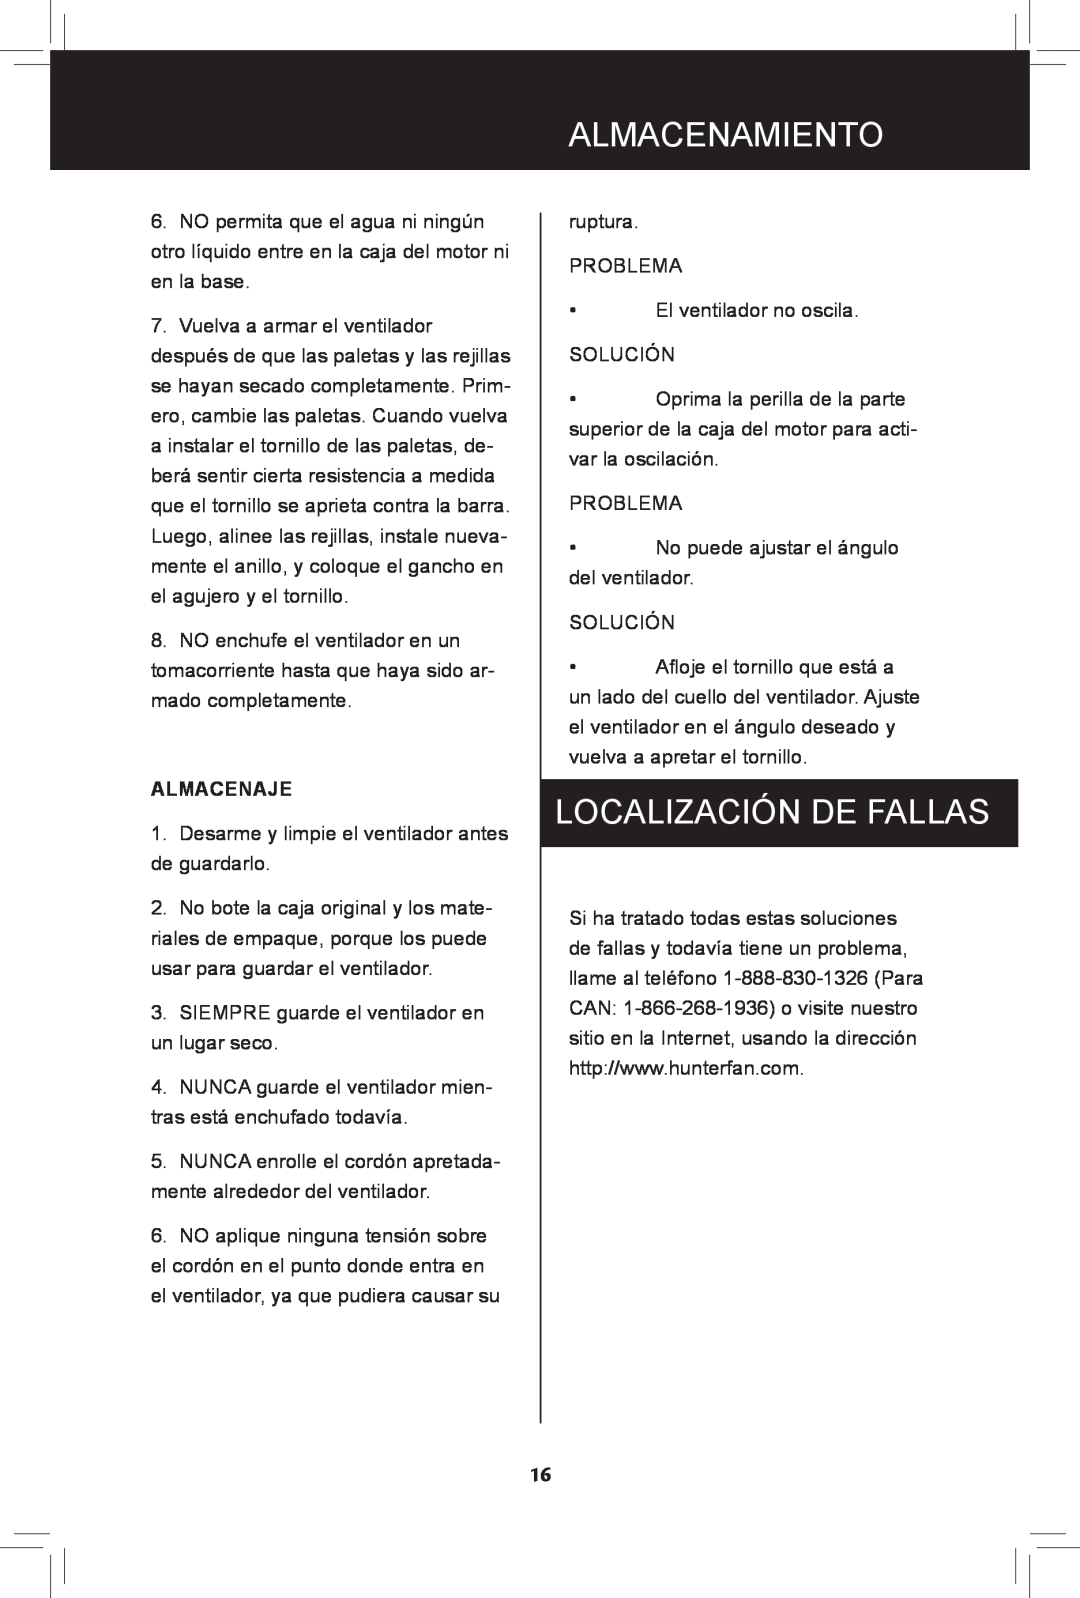 Hunter Fan 90408, 44828-01, 20091104 manual Almacenamiento, Localización De Fallas, almacenaje 